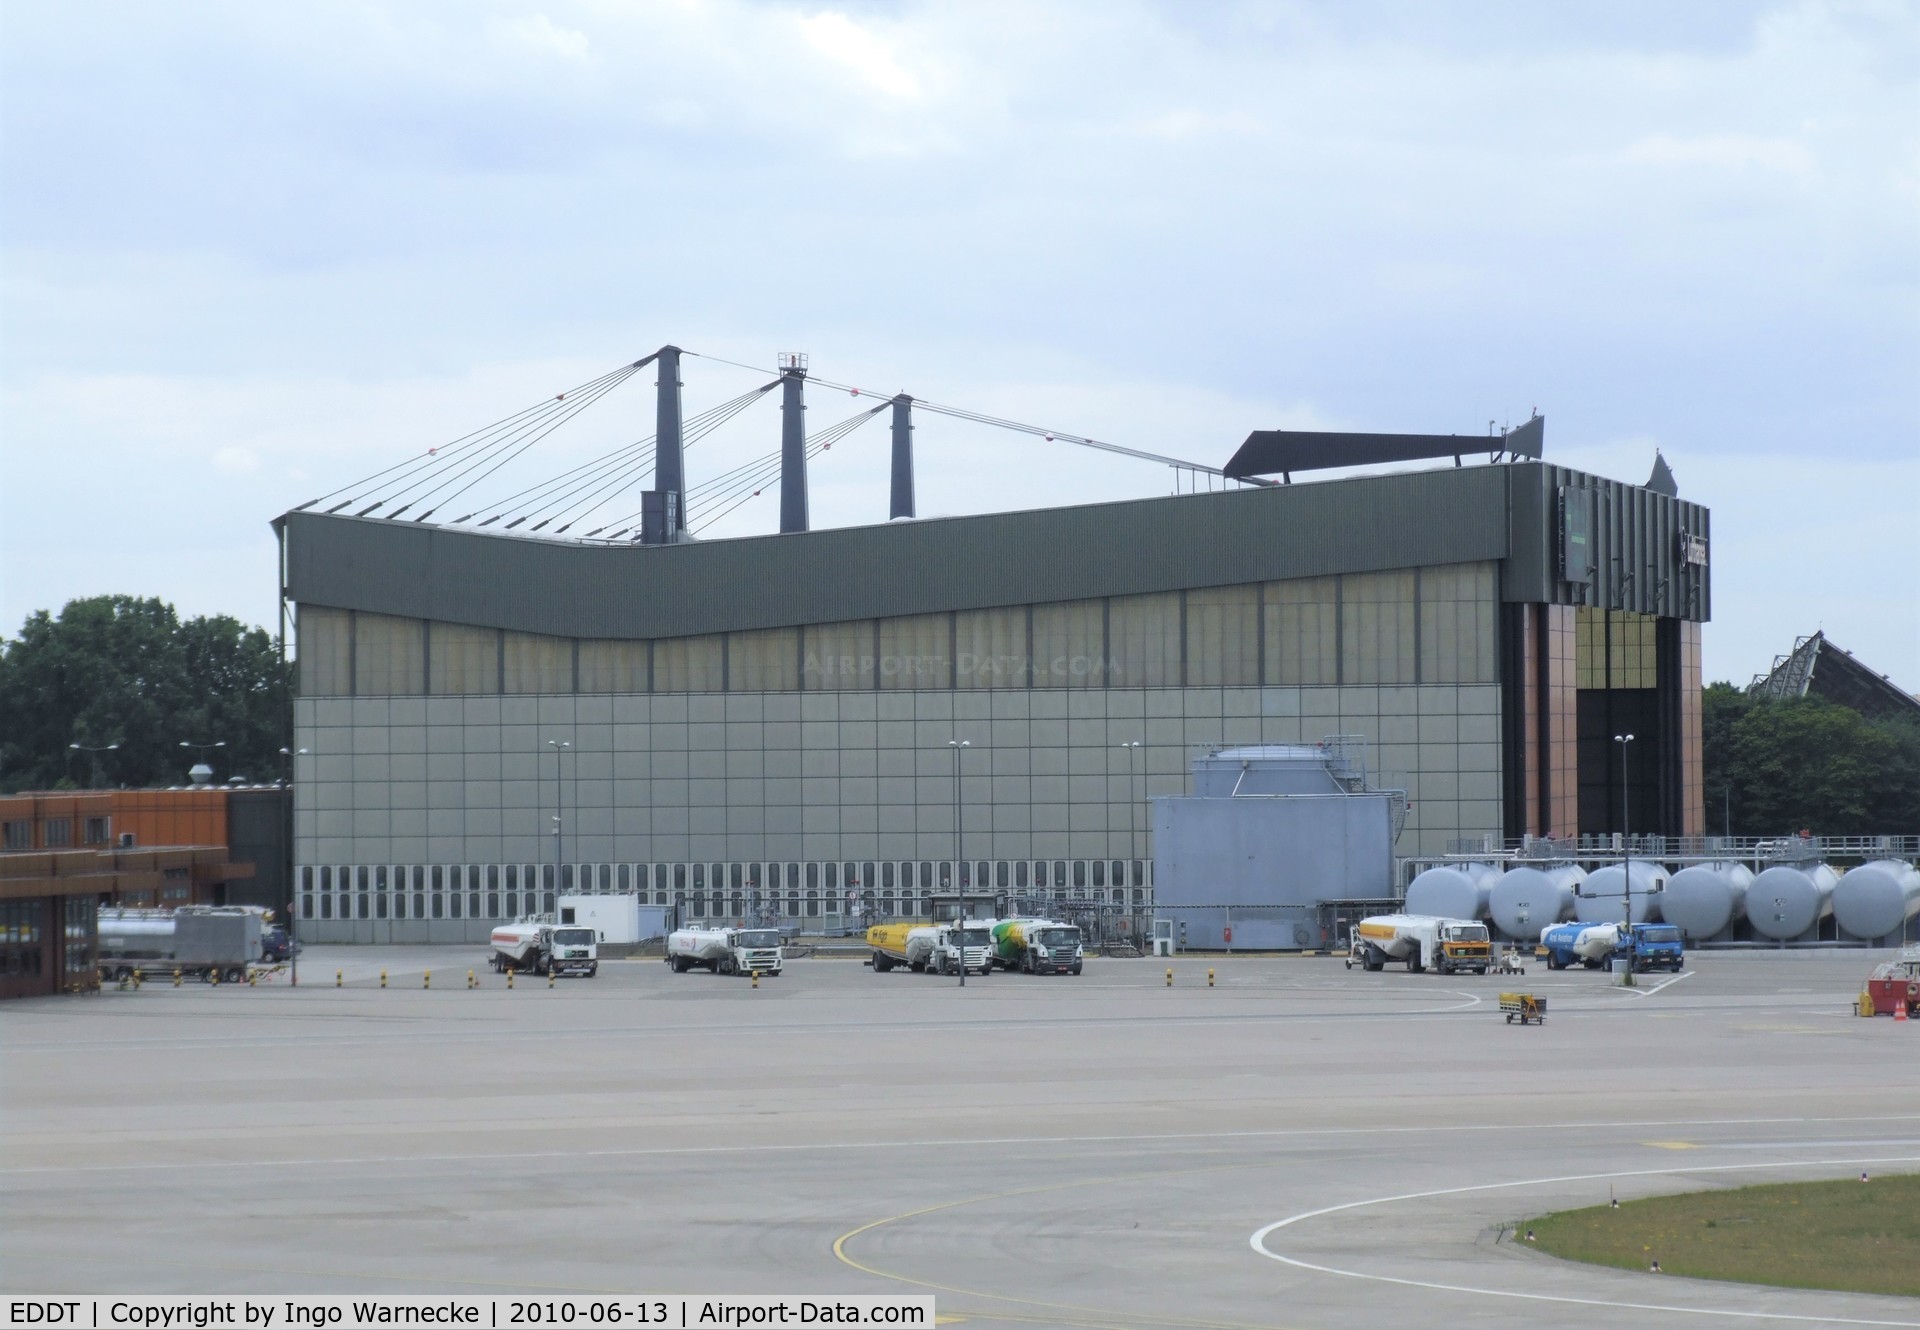 Tegel International Airport (closing in 2011), Berlin Germany (EDDT) - western hangar at Berlin Tegel airport